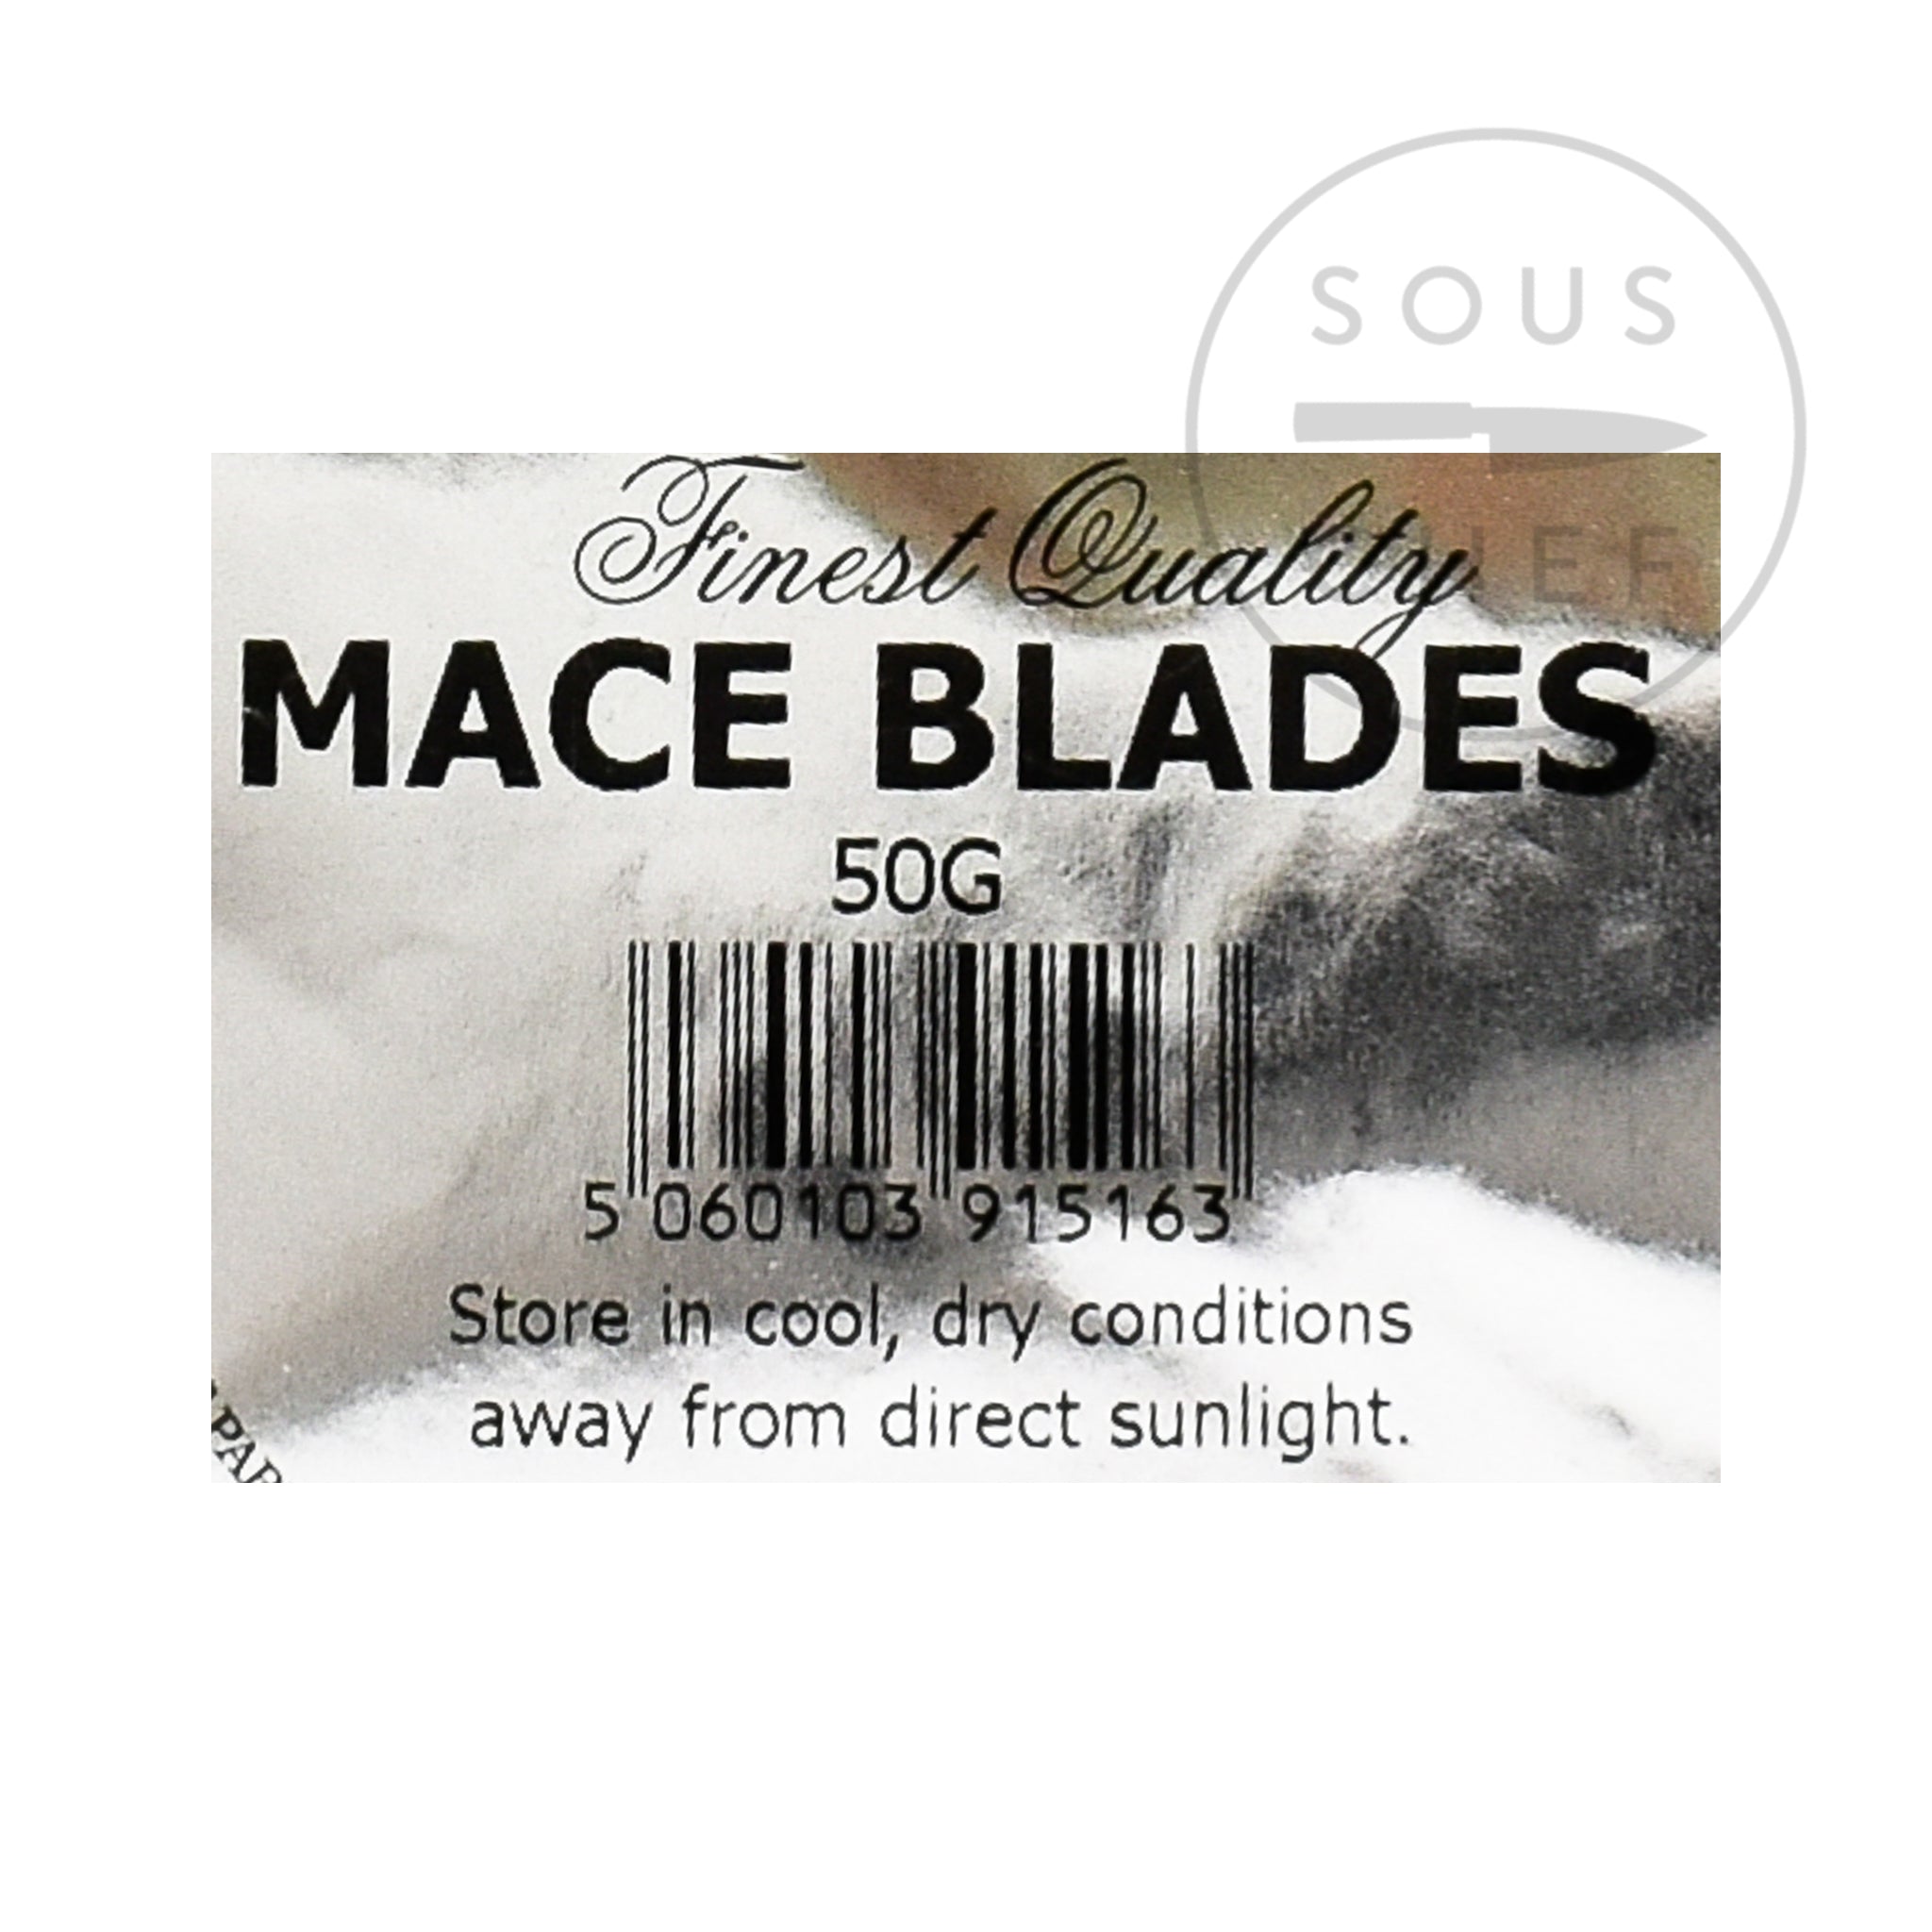 Mace Blades 50g ingredients